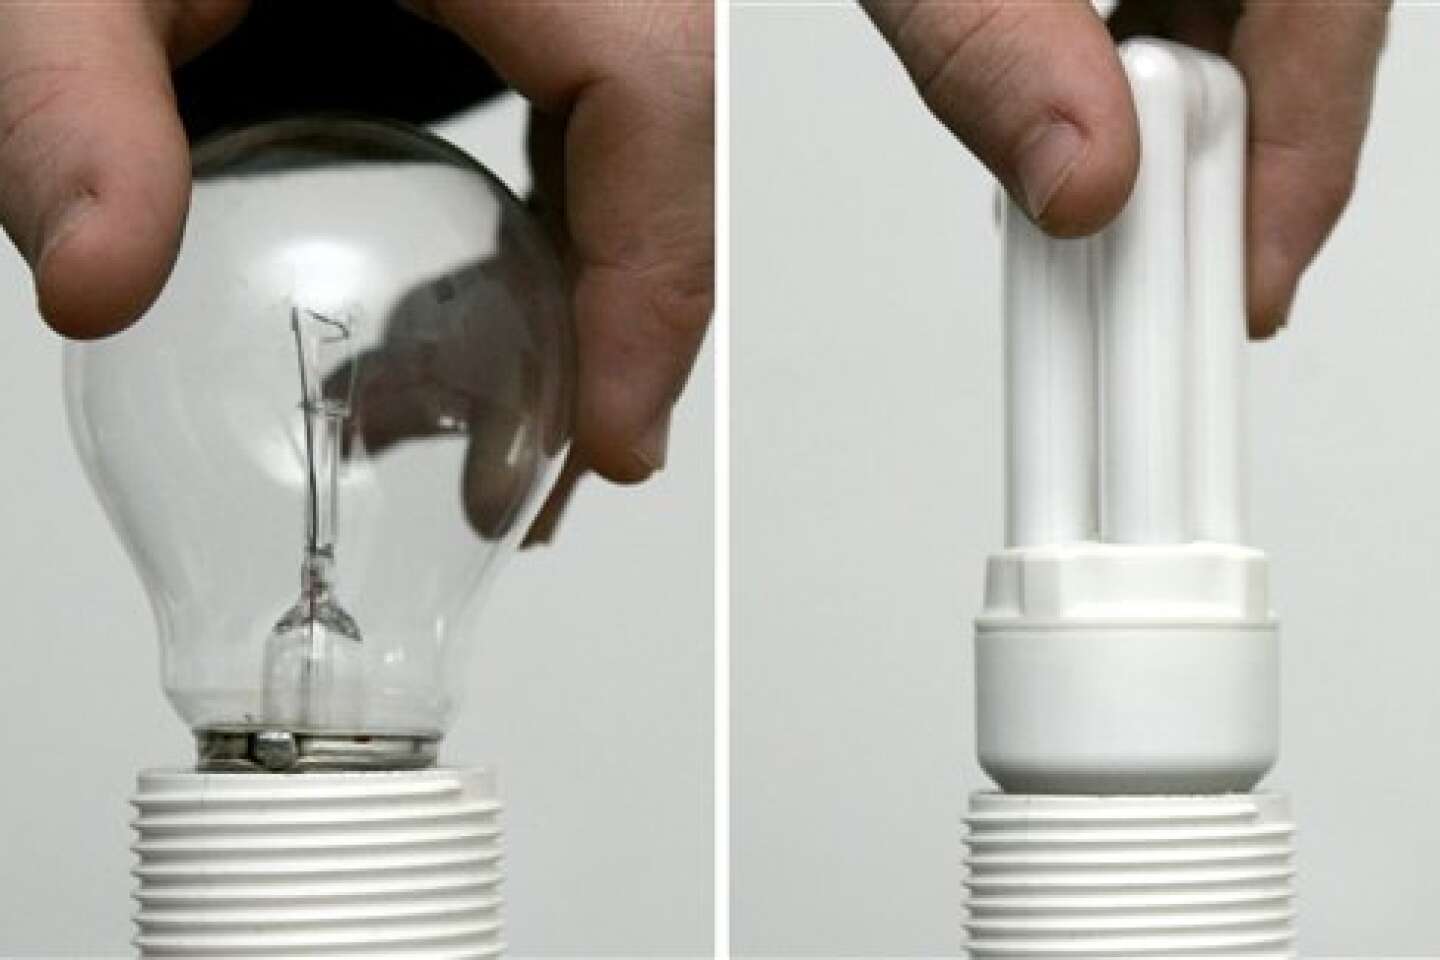 Ampoules fluocompactes: que faire en cas de bris?